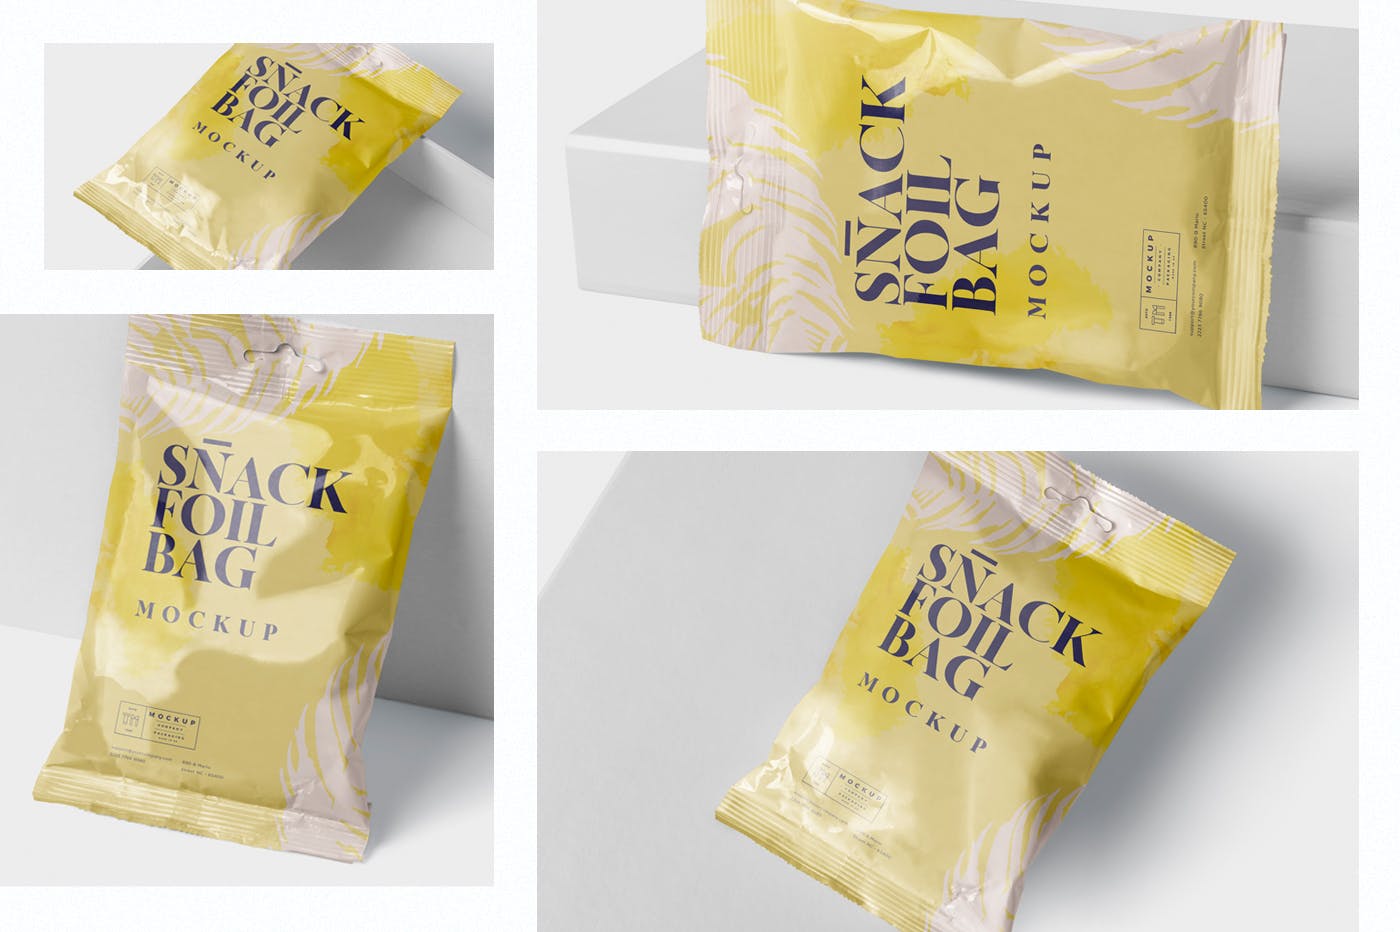 小吃零食铝箔包装袋设计样机模板 Snack Foil Bag Mockup – Slim Size插图(1)